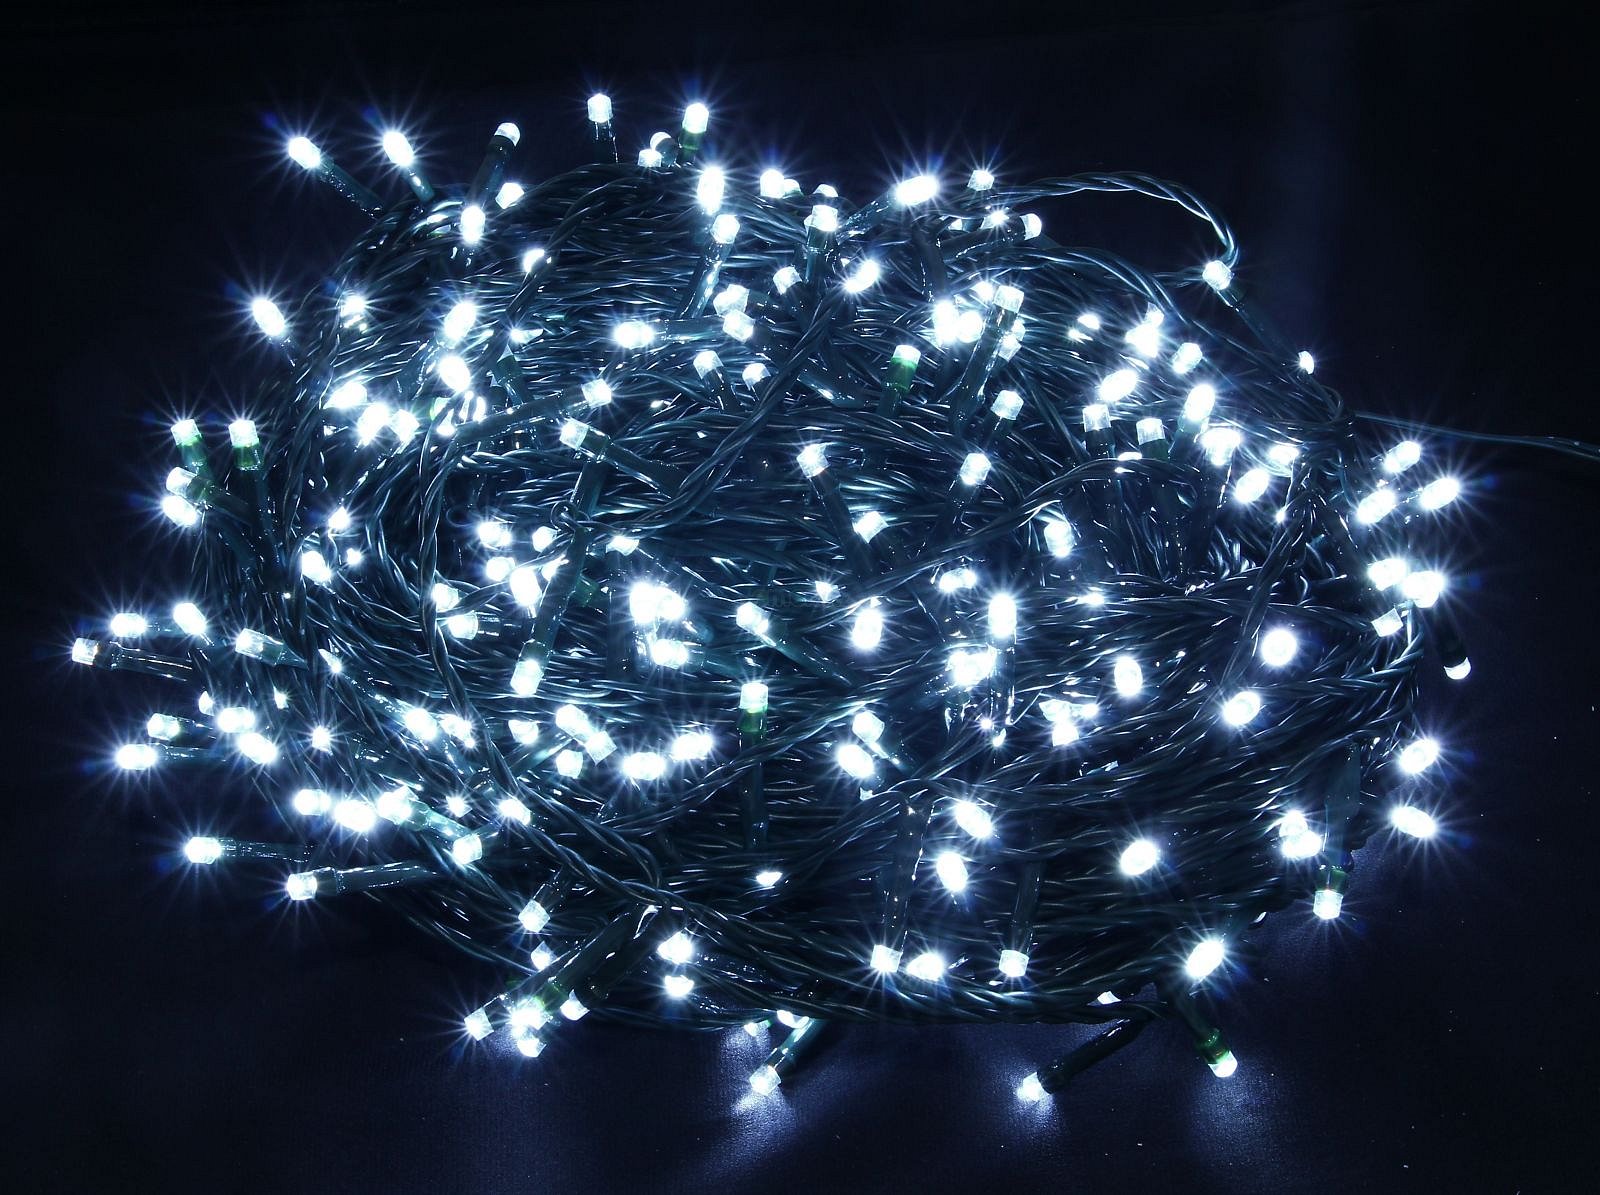 Vánoční řetěz 480 LED, bílé, délka 48m, venkovní (T480W)